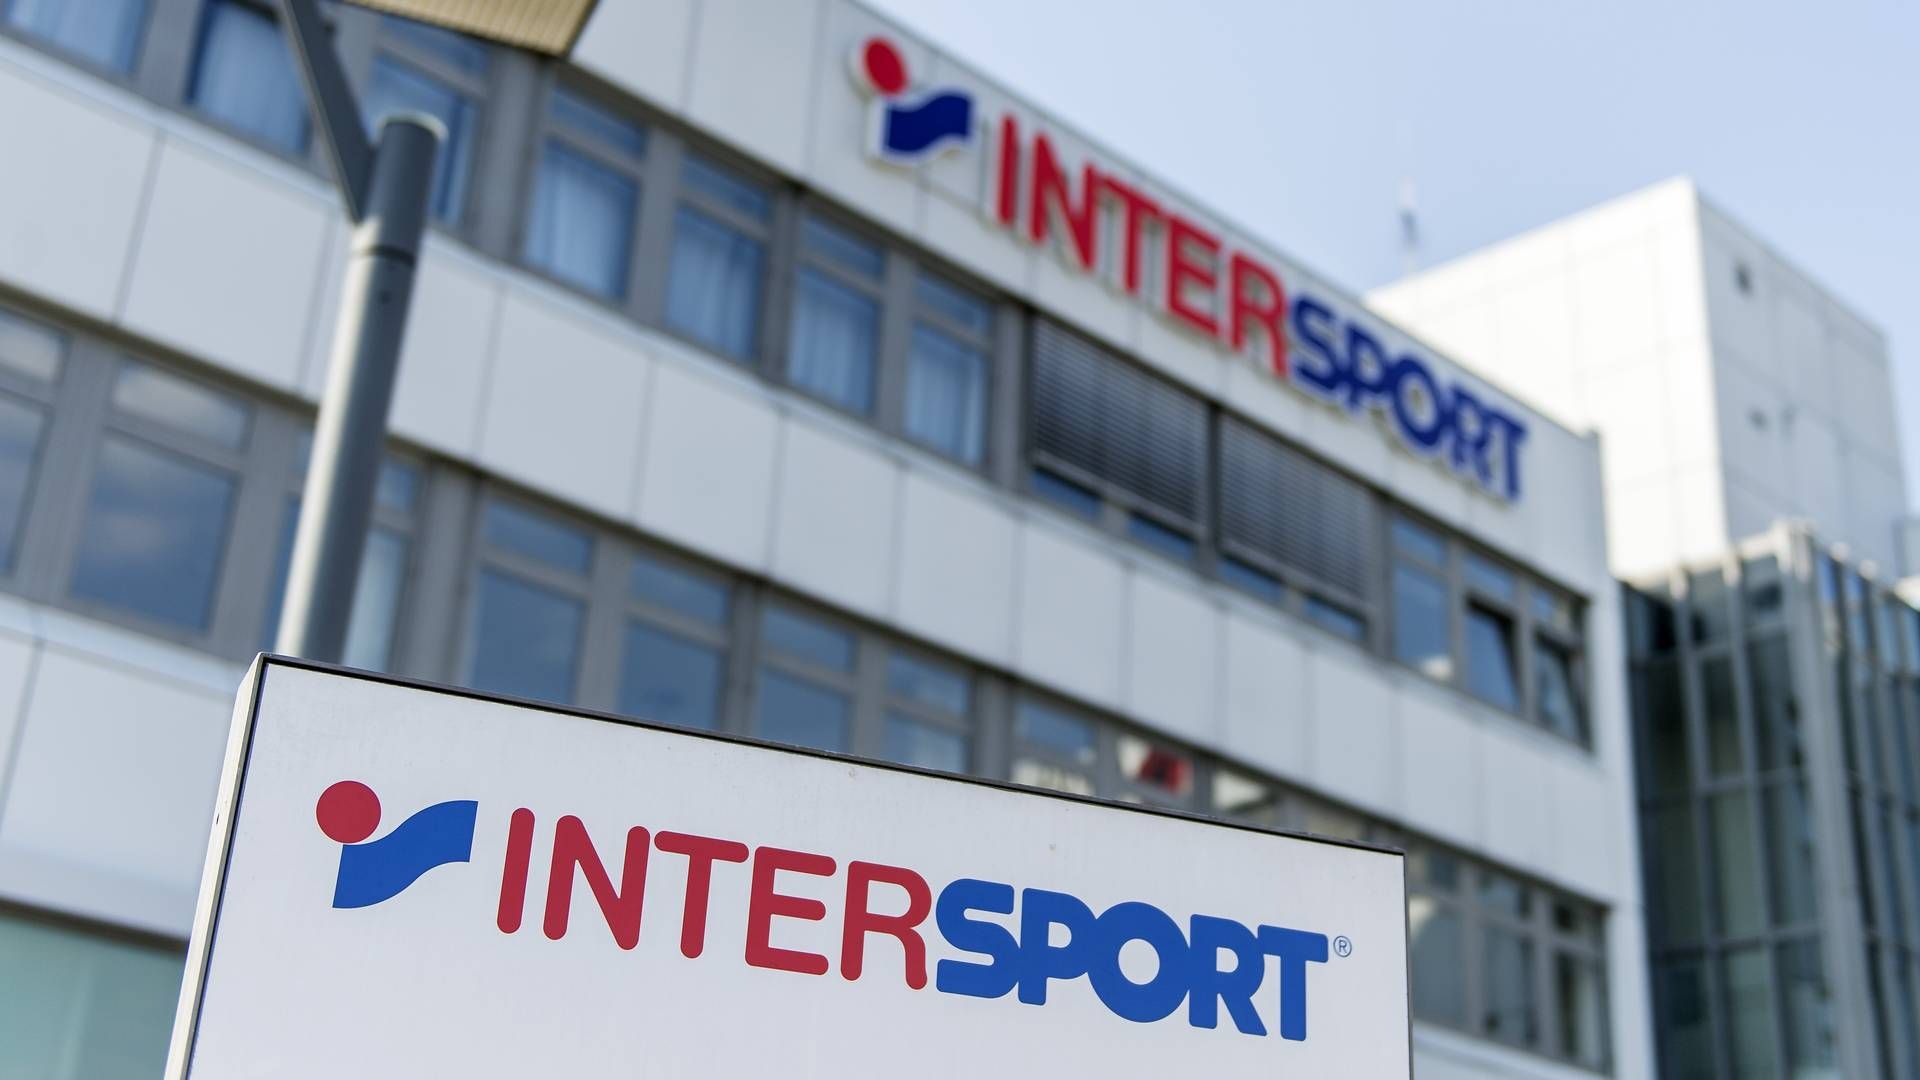 Intersport har over 5.000 butikker i mere end 30 lande. I Danmark drives sportskæden gennem selskabet Obi Sport, der også står bag The Athlete’s Foot. | Foto: Daniel Maurer/ap/ritzau Scanpix